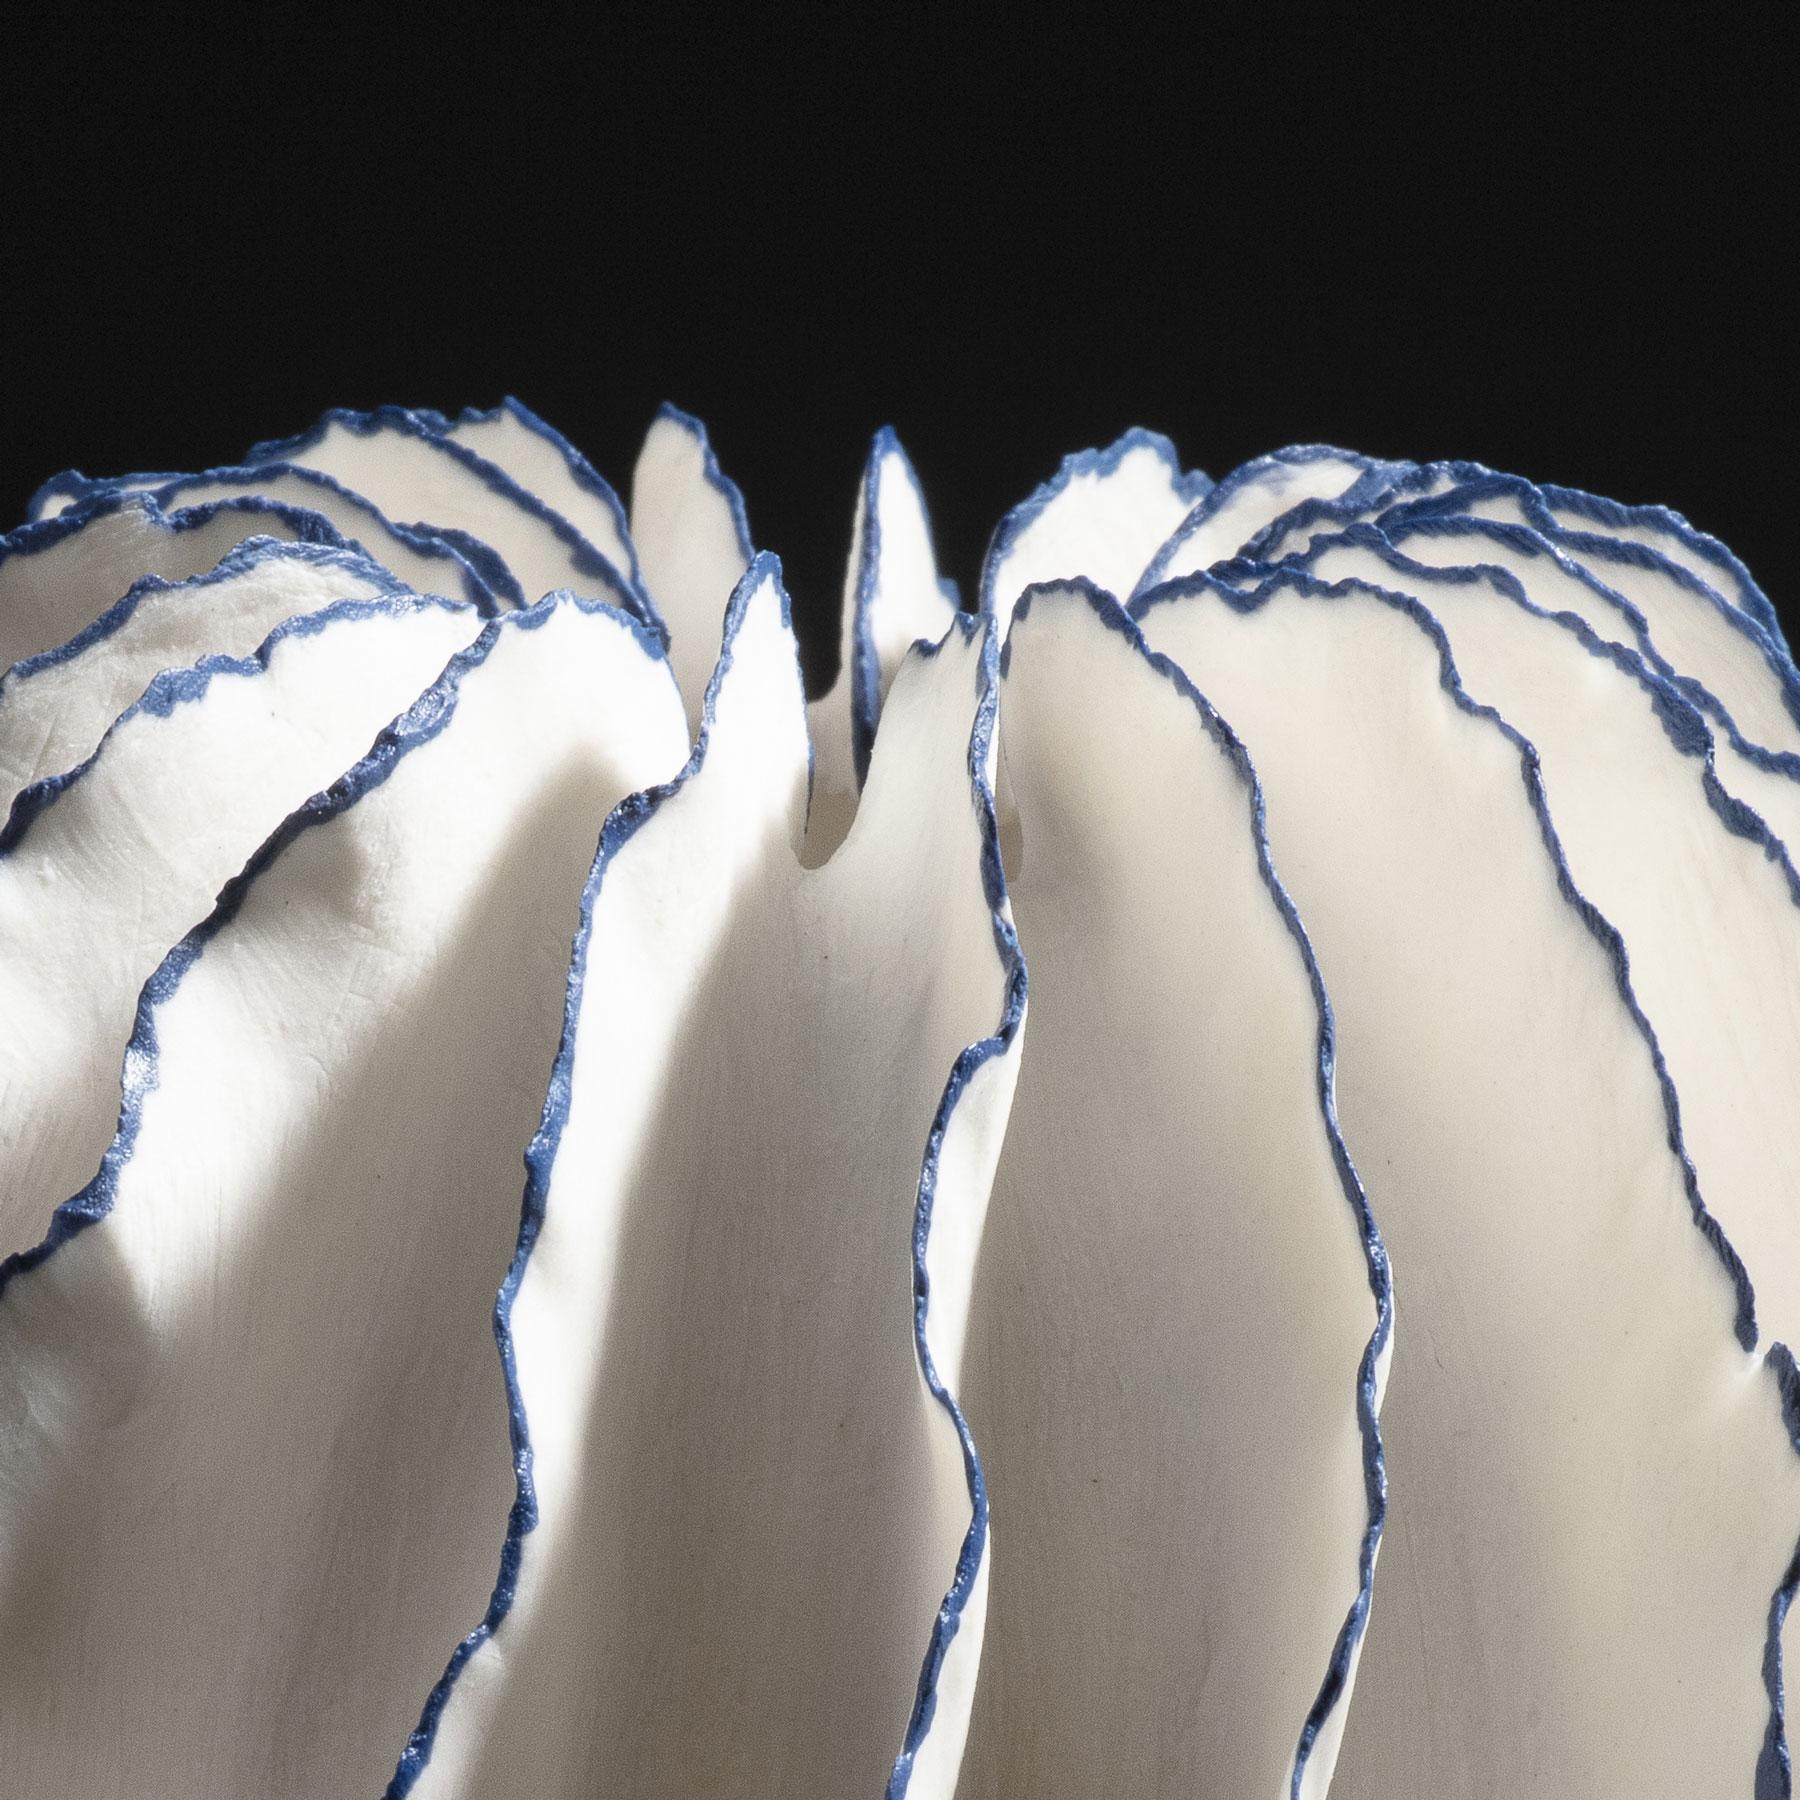 Danish Unique White and Blue Ceramic Vase by Sandra Davolio